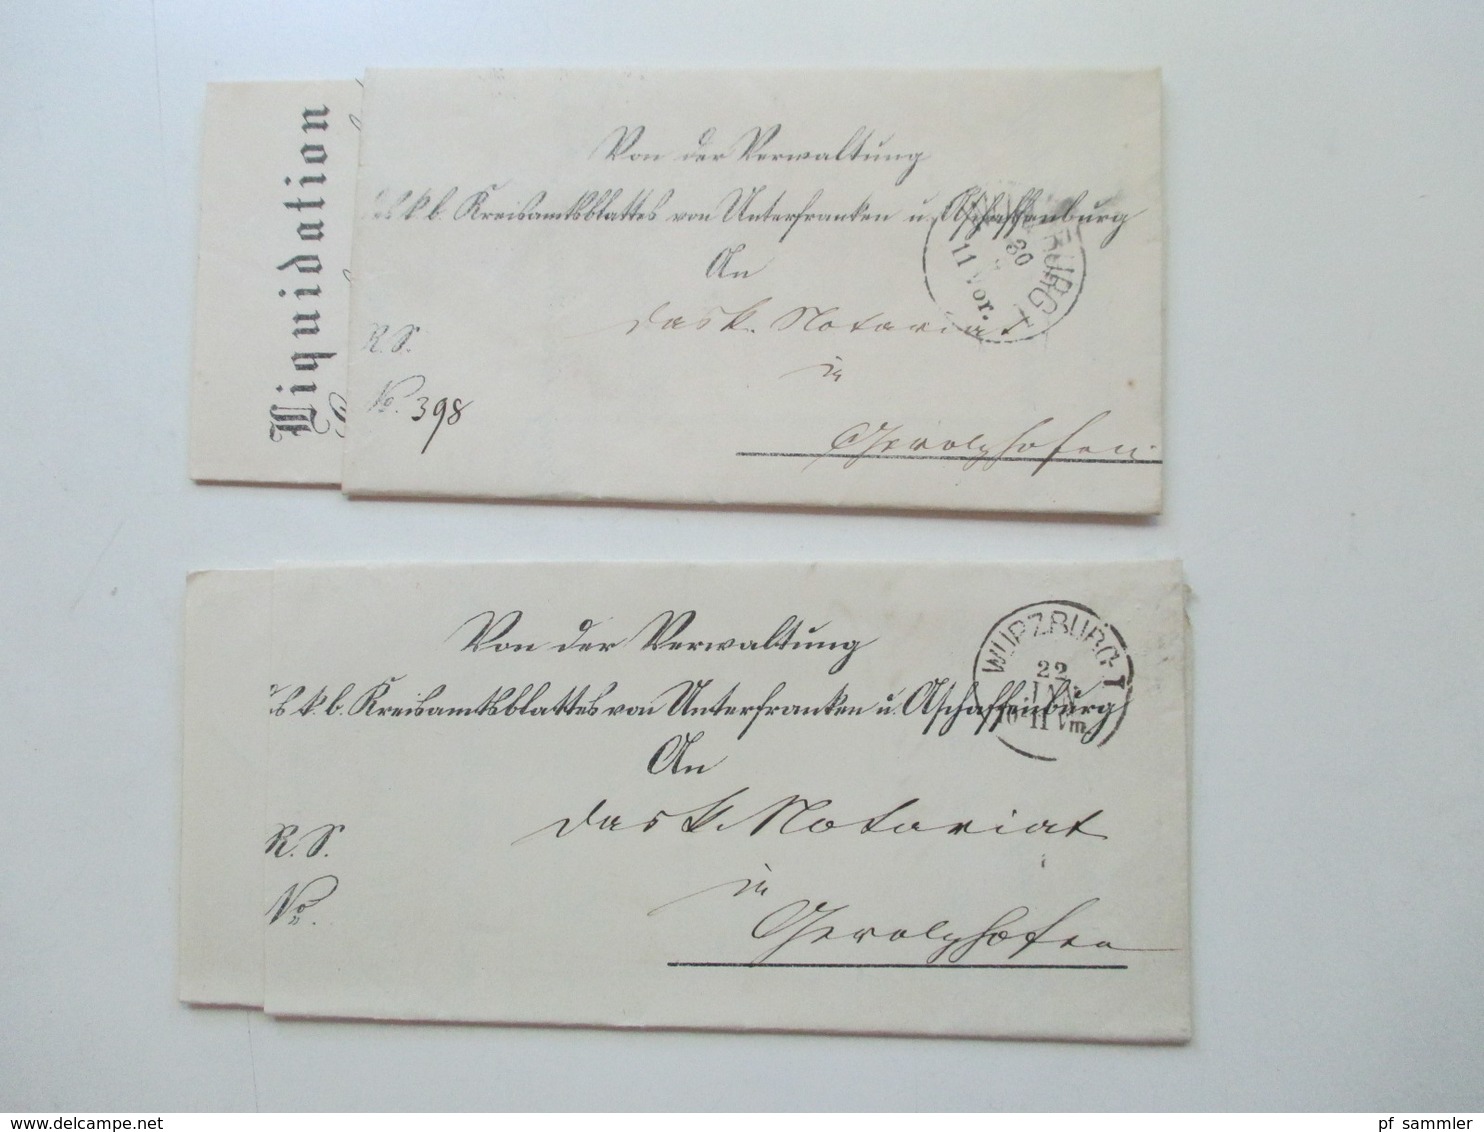 AD Bayern - DR 1809 - 1920er Jahre! Dienstbriefe / Amtsbriefe Markenlos. Viel mit Inhalt. Farbige Stempel. 100 Stk